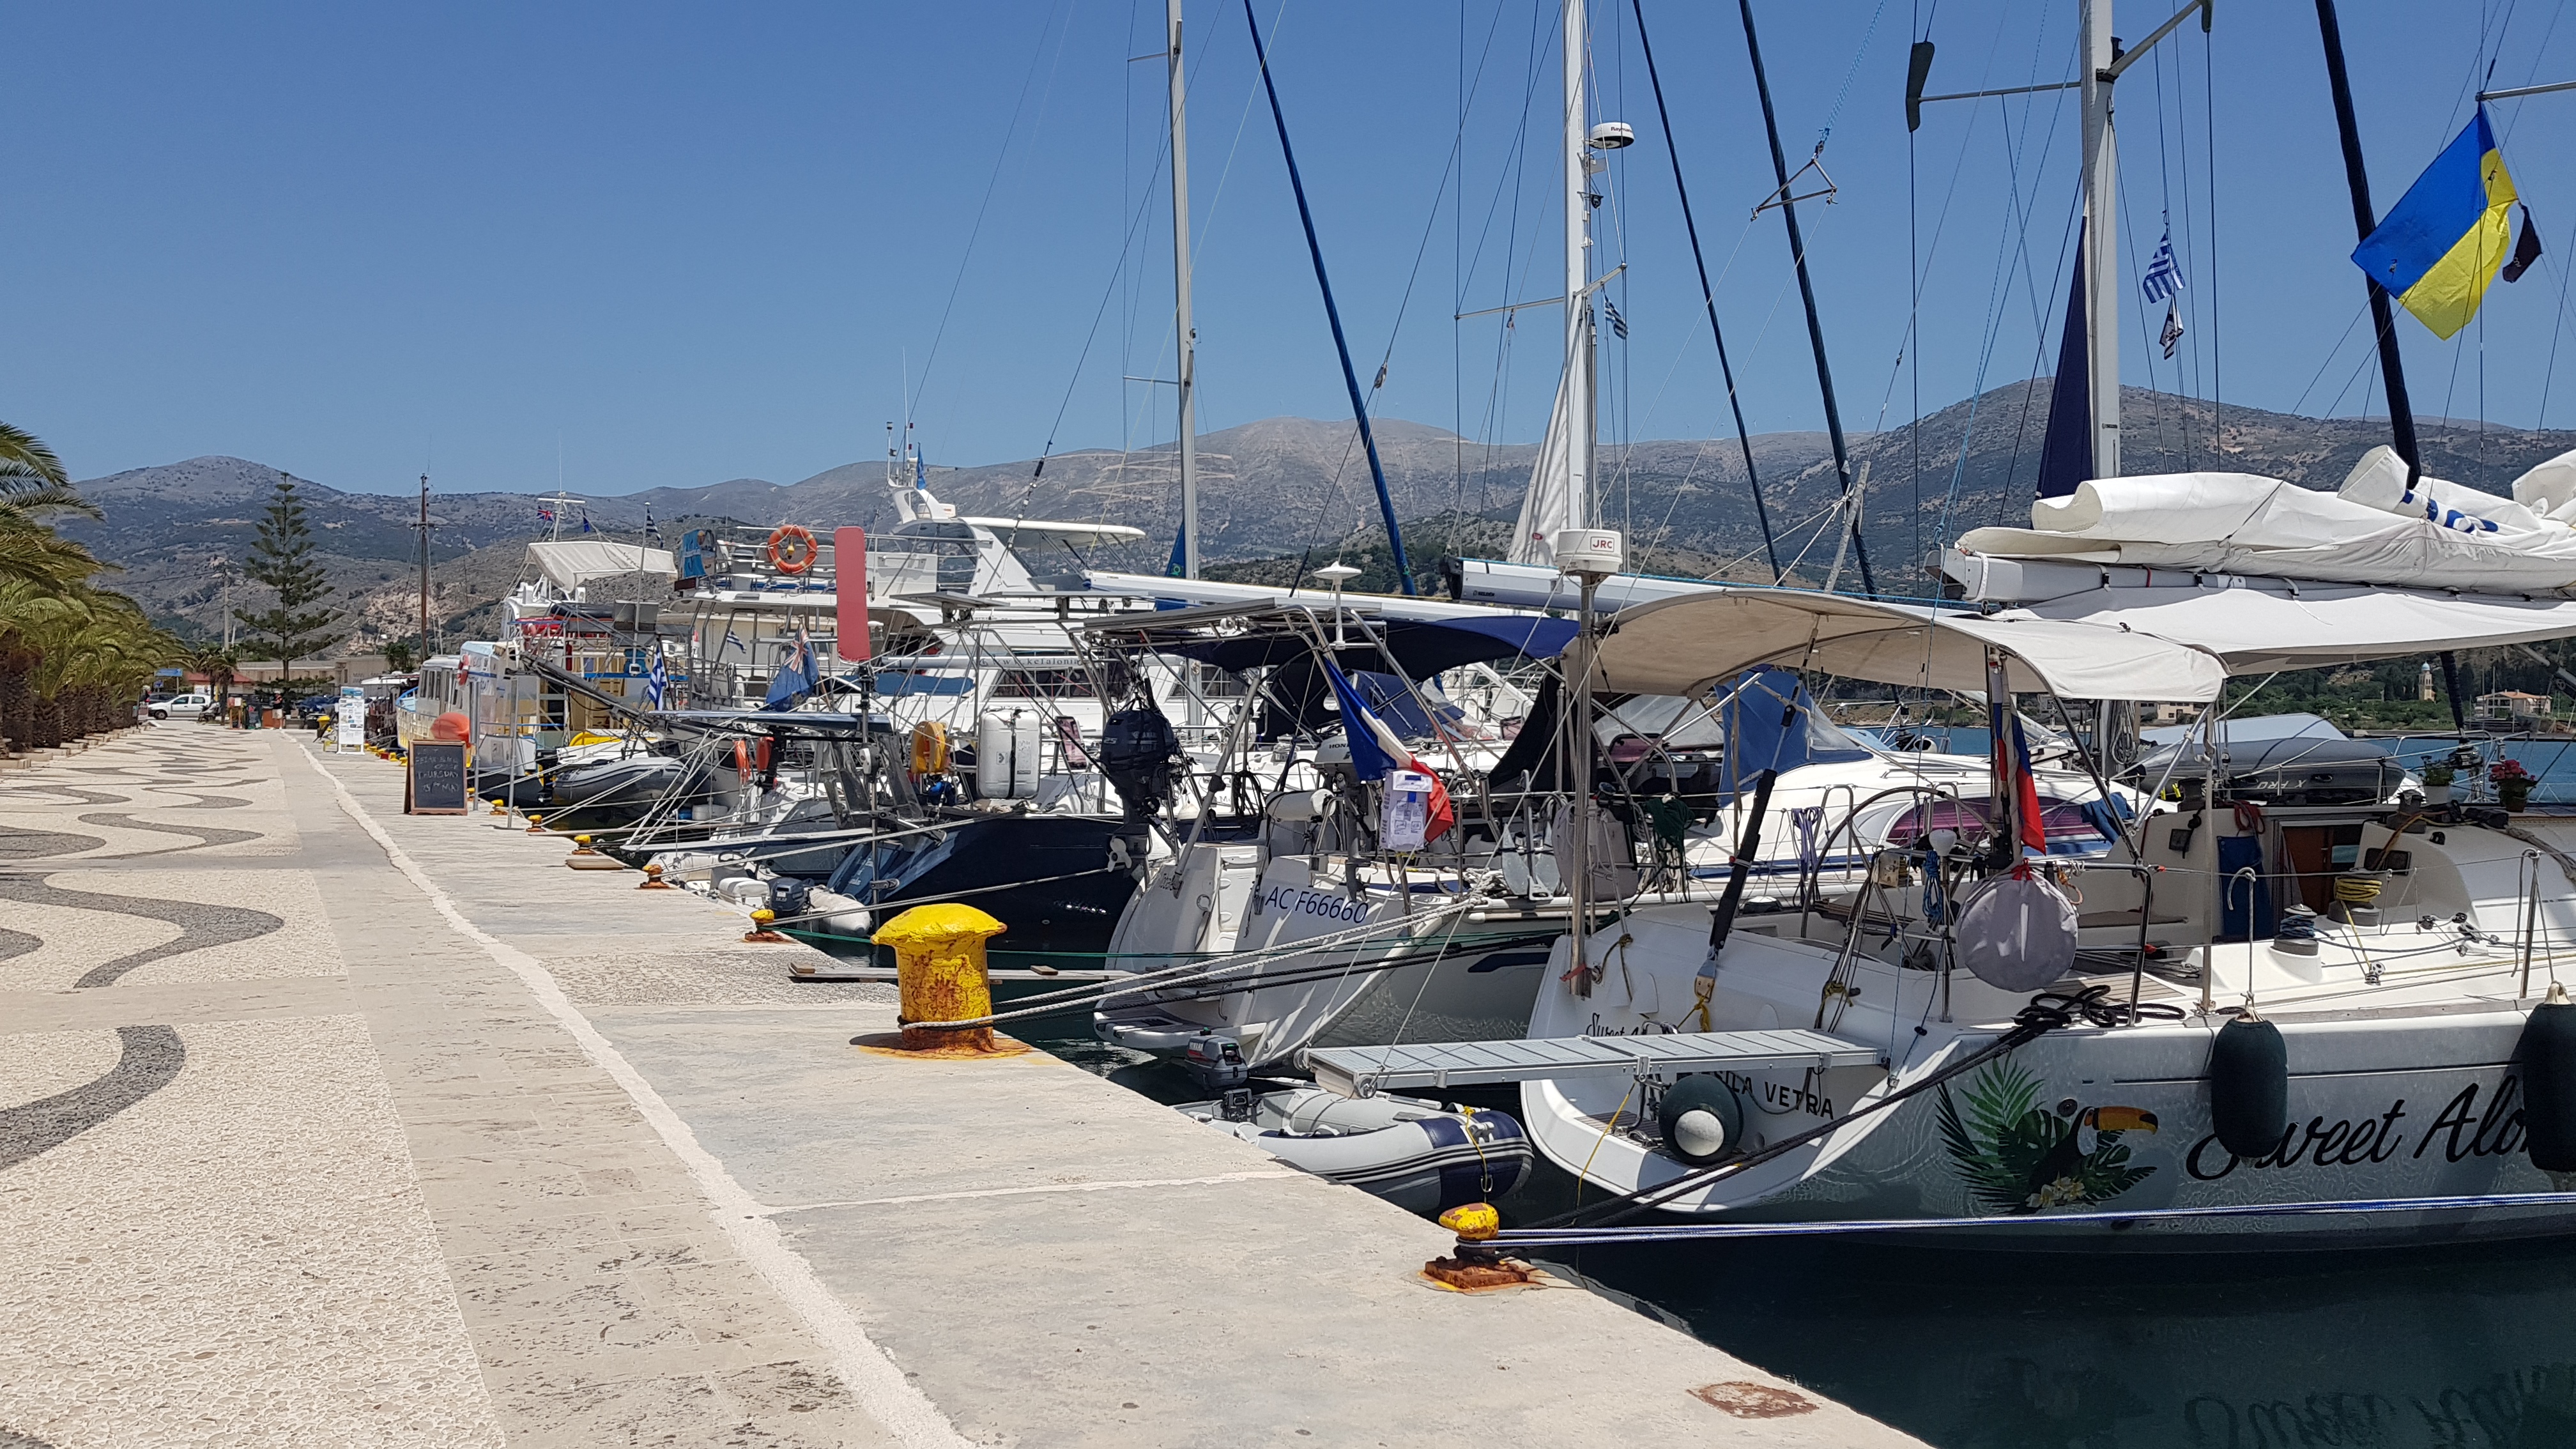 The harbour Argostoli